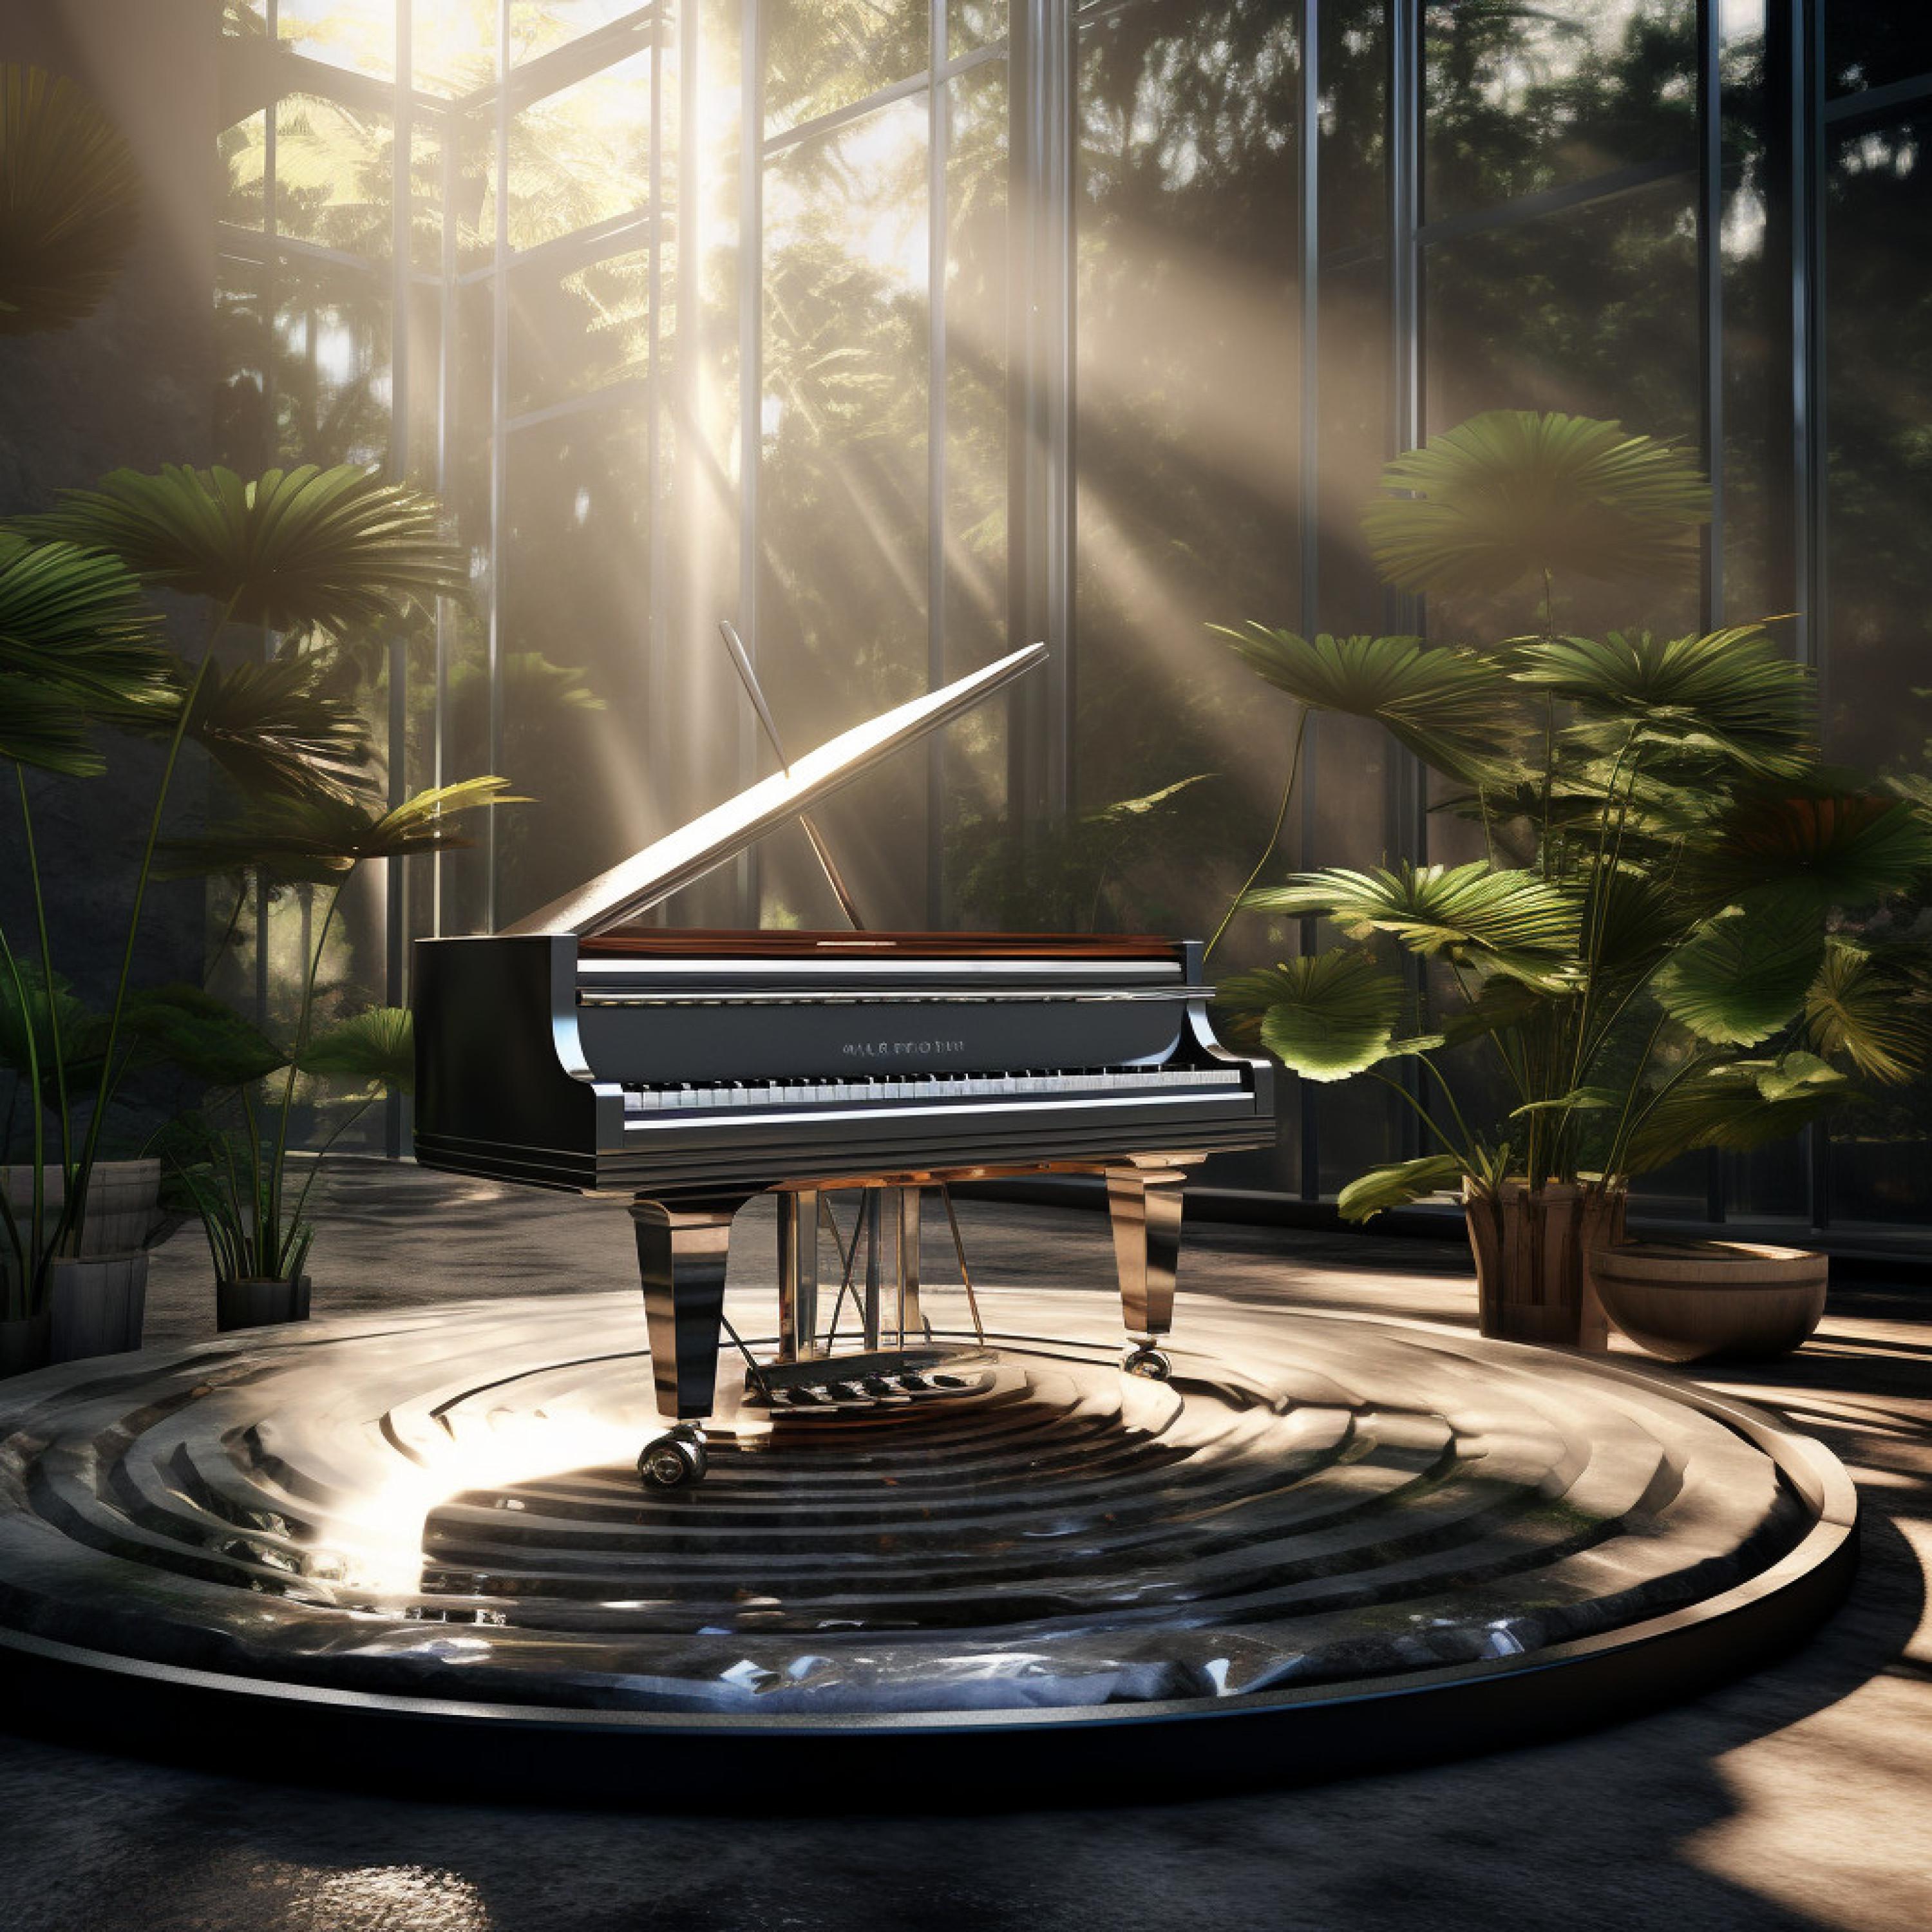 The Goth Piano - Meditative Piano Zen Tune